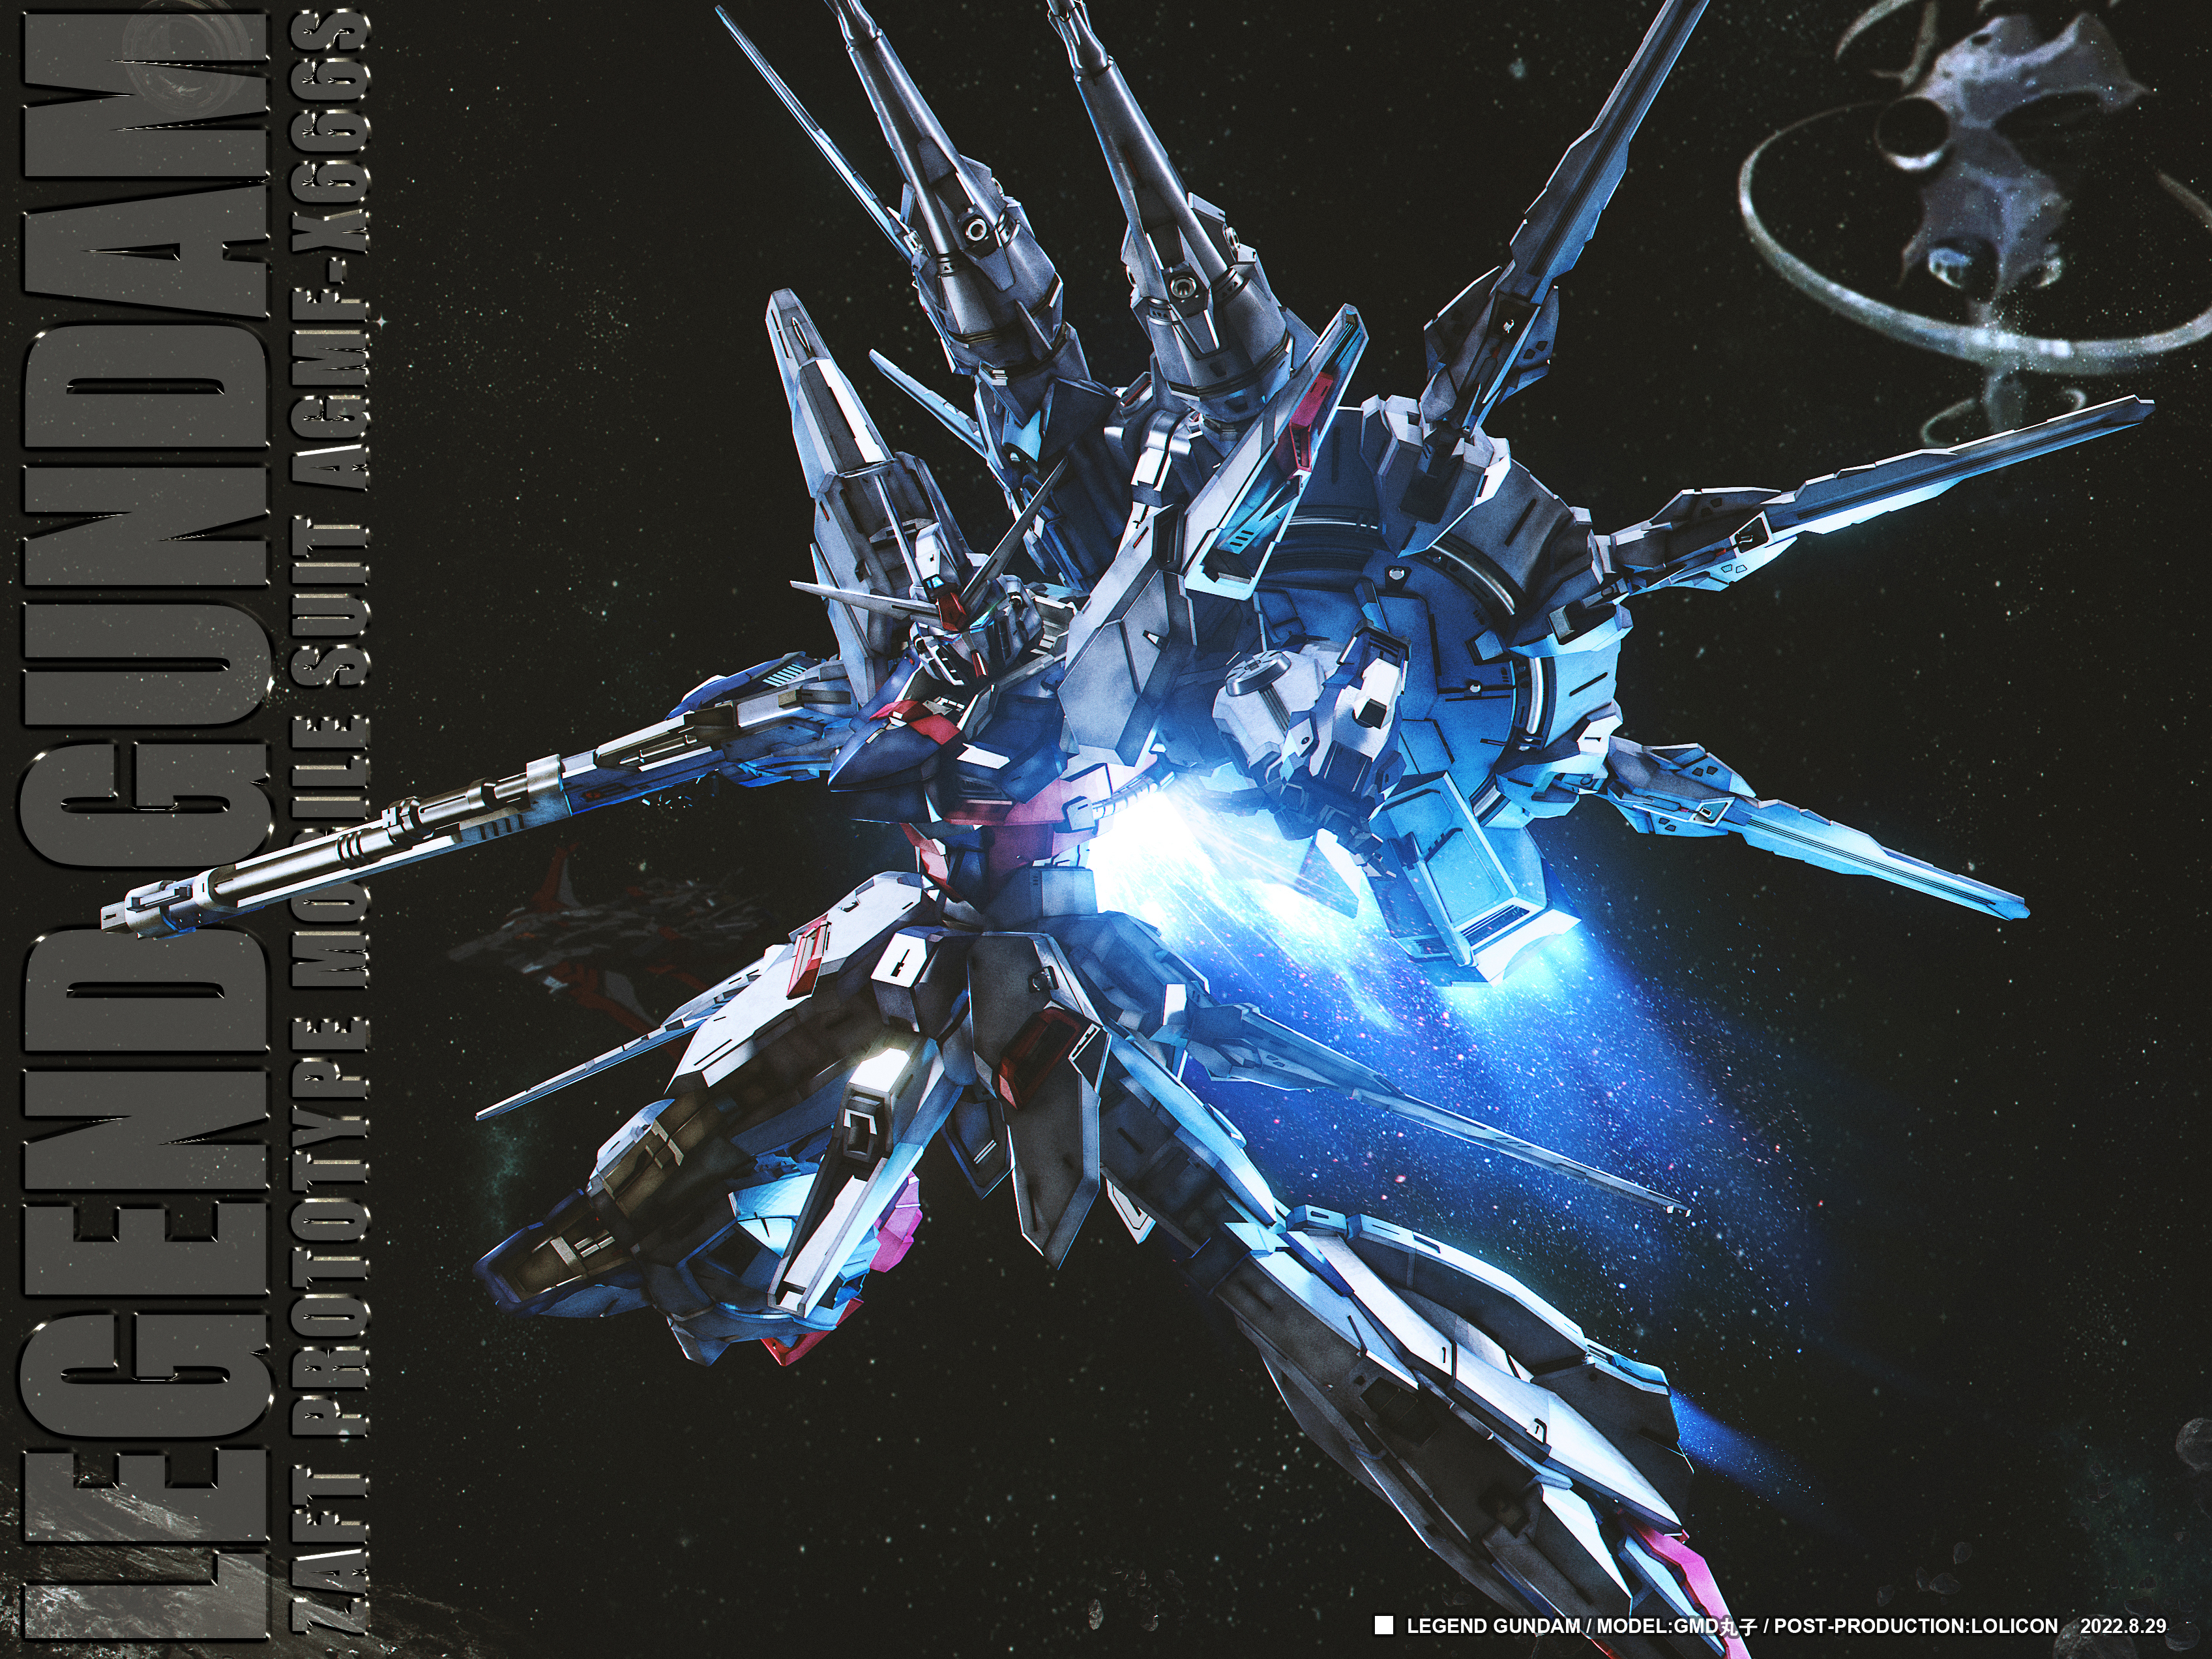 Anime 3393x2544 anime mechs Mobile Suit Gundam SEED Destiny Super Robot Taisen Gundam Legend Gundam artwork digital art fan art